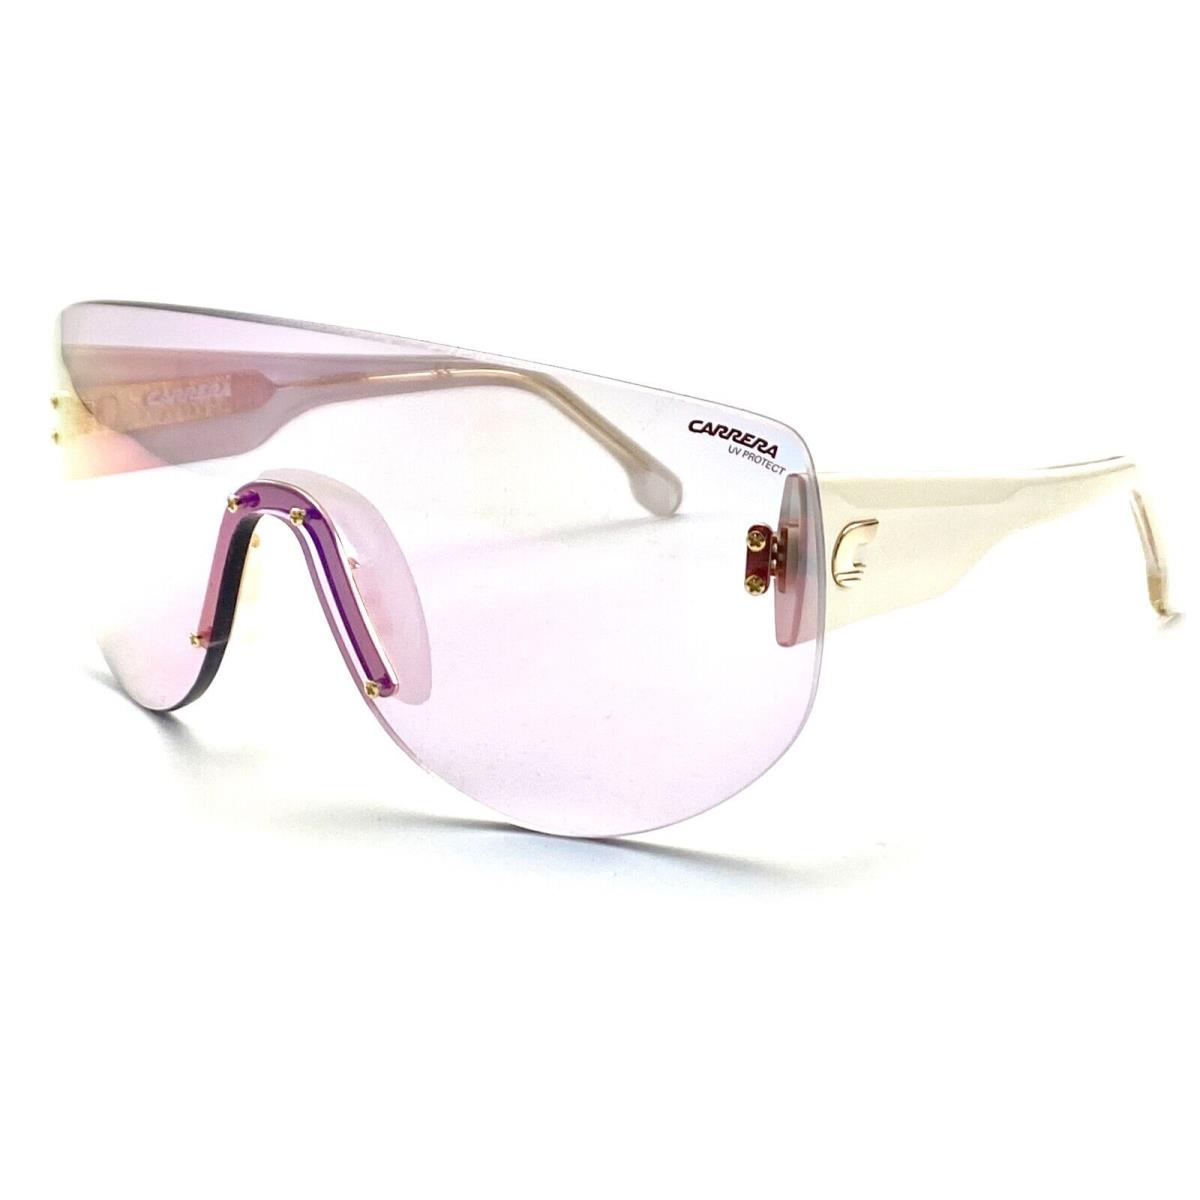 Carrera Flagbag 12 2UCTE White Sunglasses 99-01 140 V